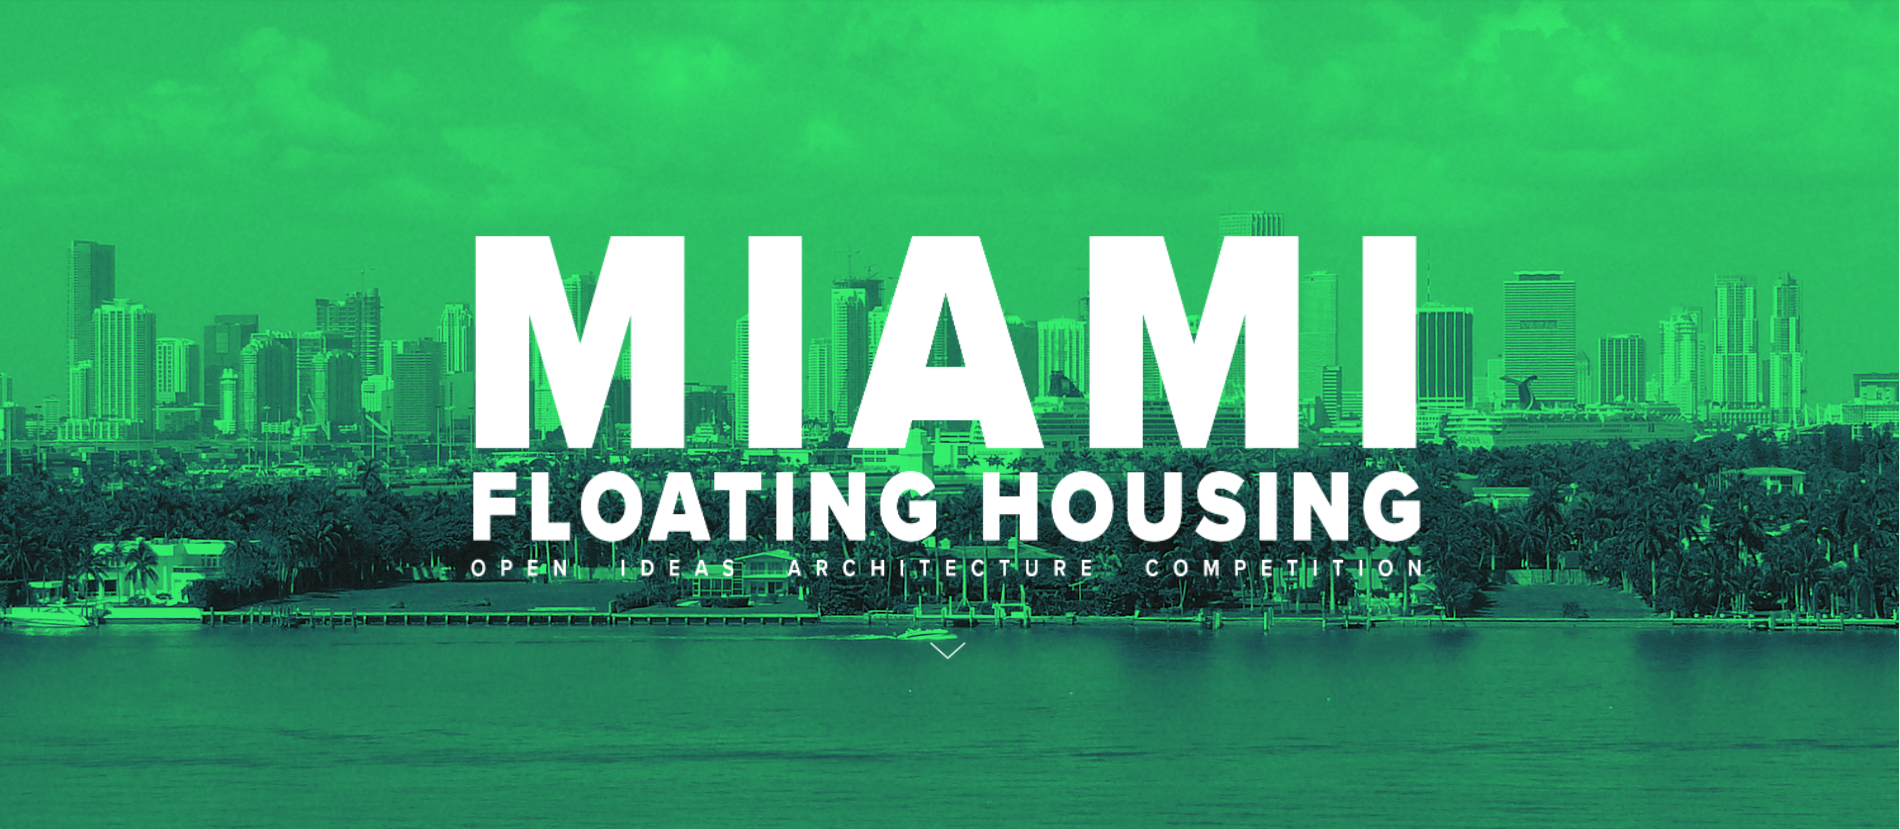 迈阿密水上住房概念建筑竞赛